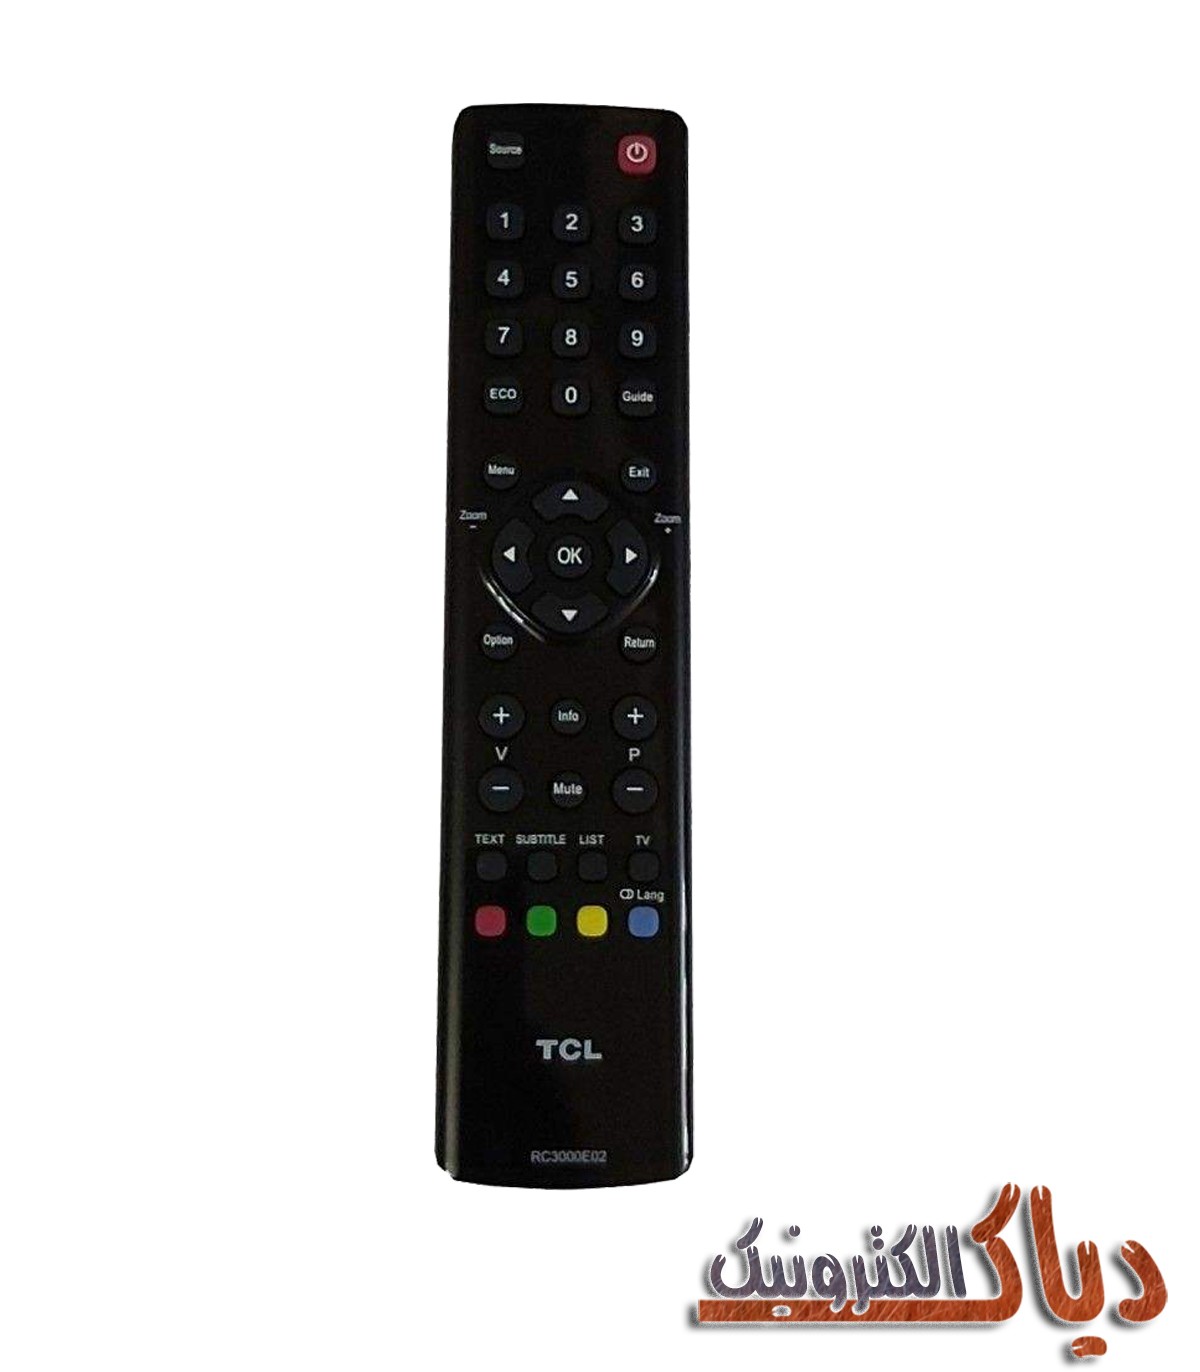 کنترل تلویزیون تی سی ال مدل RC3000E02